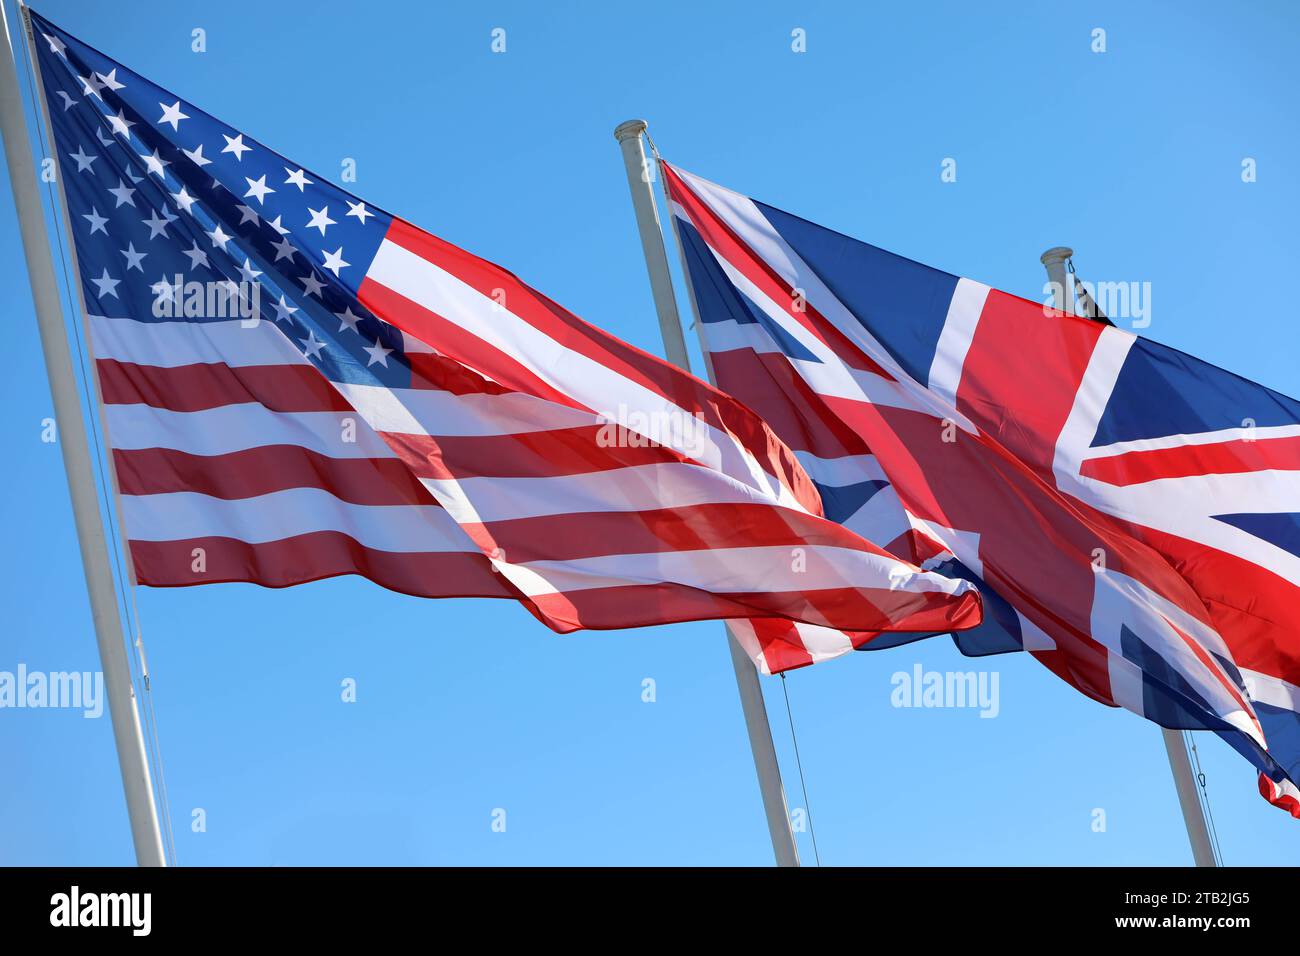 Die Flagge der Vereinigten Staaten von Amerika links und die Flagge von Großbritannien rechts wehen nebeneinander im Wind. Blauer Himmel. US-amerikanische Flagge und Flagge von Großbritannien nebeneinander. *** Le drapeau des États-Unis d'Amérique à gauche et le drapeau de la Grande-Bretagne à droite volant côte à côte dans le vent ciel bleu drapeau américain et drapeau de la Grande-Bretagne côte à côte crédit : Imago/Alamy Live News Banque D'Images